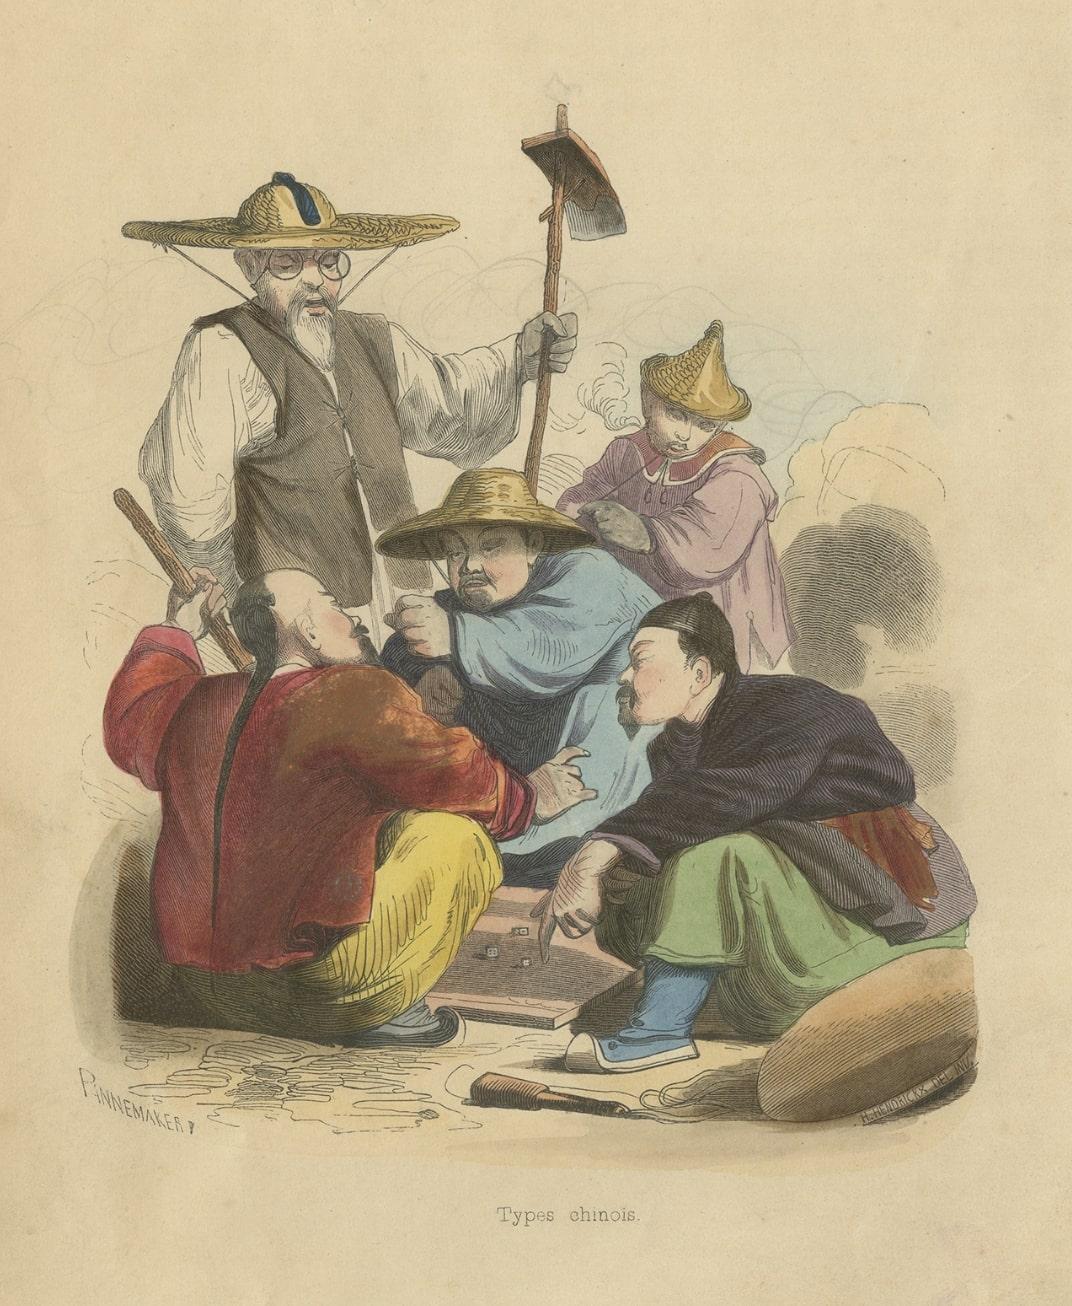 Antiker Gambling-Druck von chinesischen Männern, die ein Spitzenspiel spielen, 1843